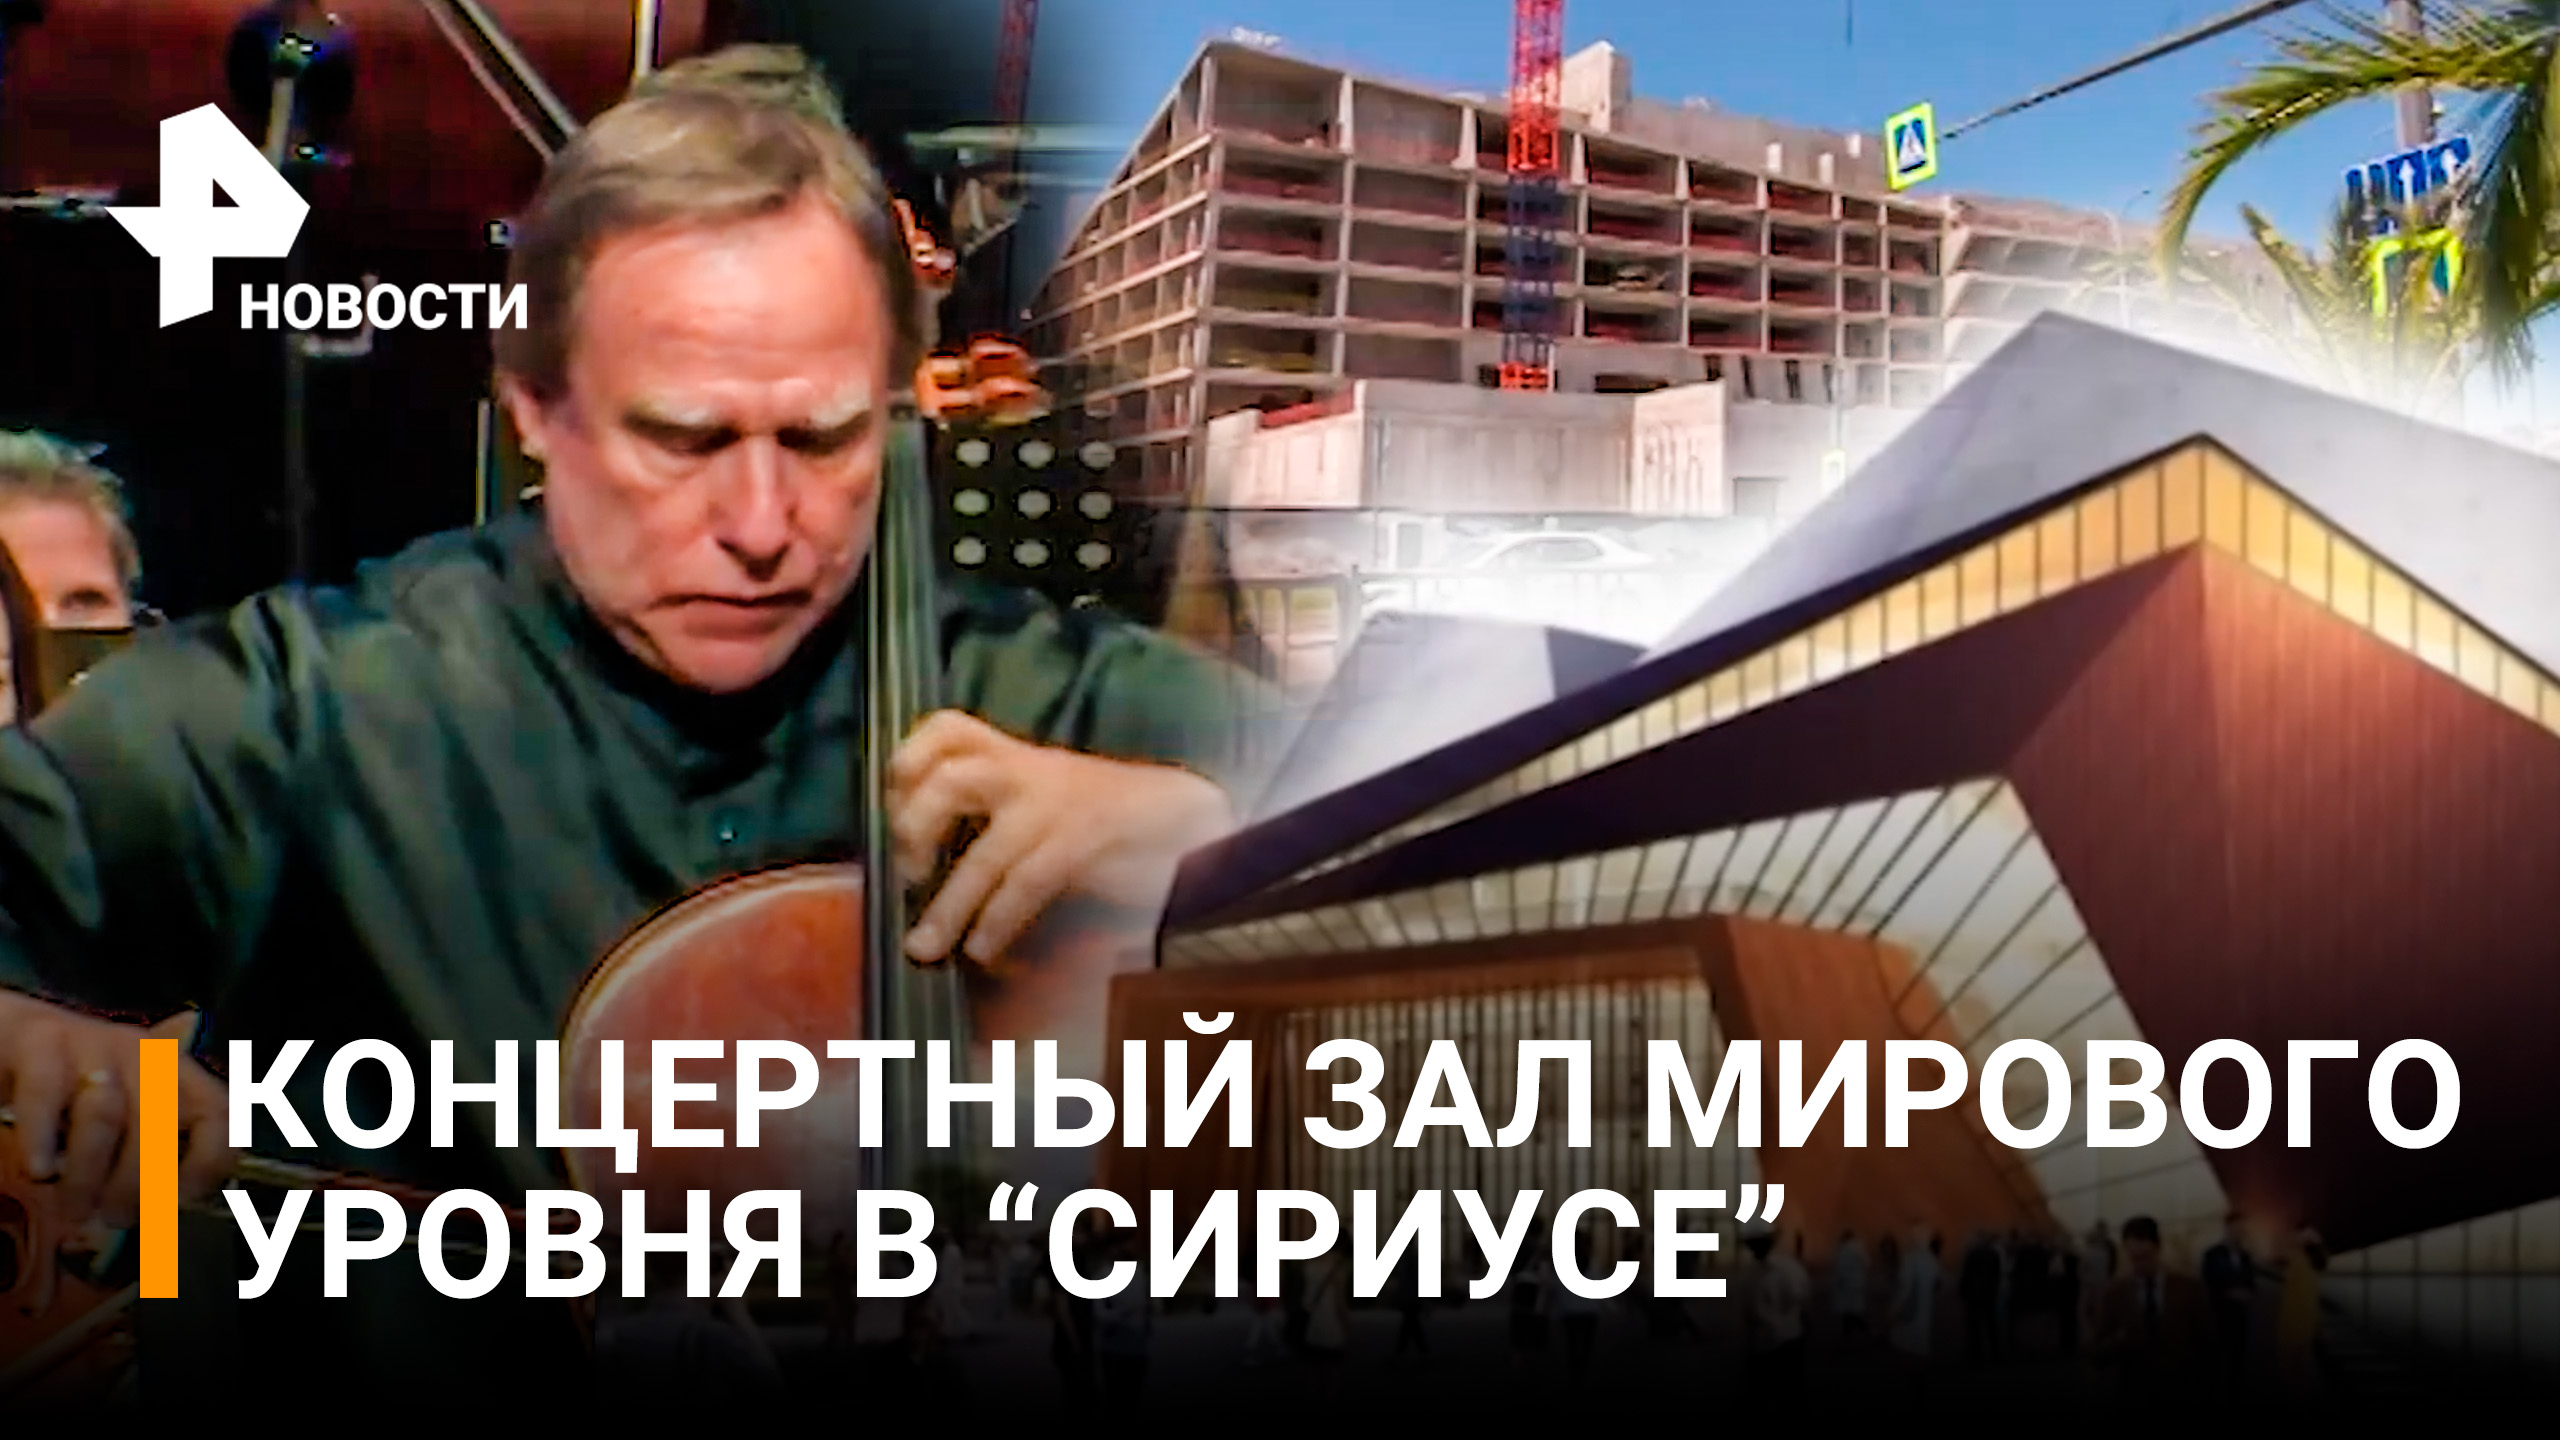 Ролдугин о строительстве концертного зала мирового уровня в "Сириусе" / РЕН Новости